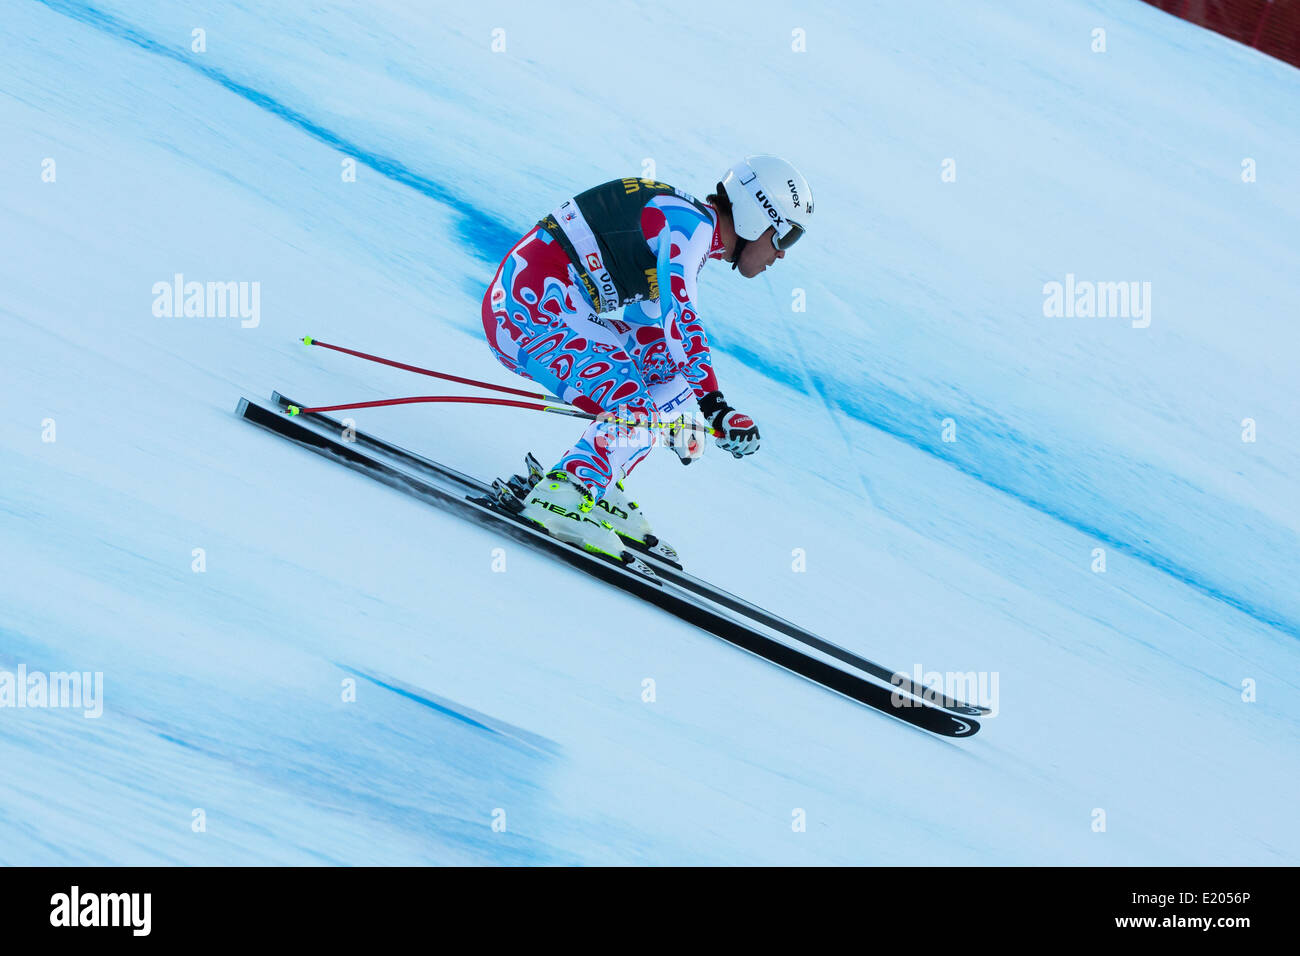 Johan CLAREY (FRA) est entraînée vers le bas la piste Saslong compétitive dans une AUDI FIS Ski World Cup MEN'S EN DESCENTE sur la piste Saslong Banque D'Images